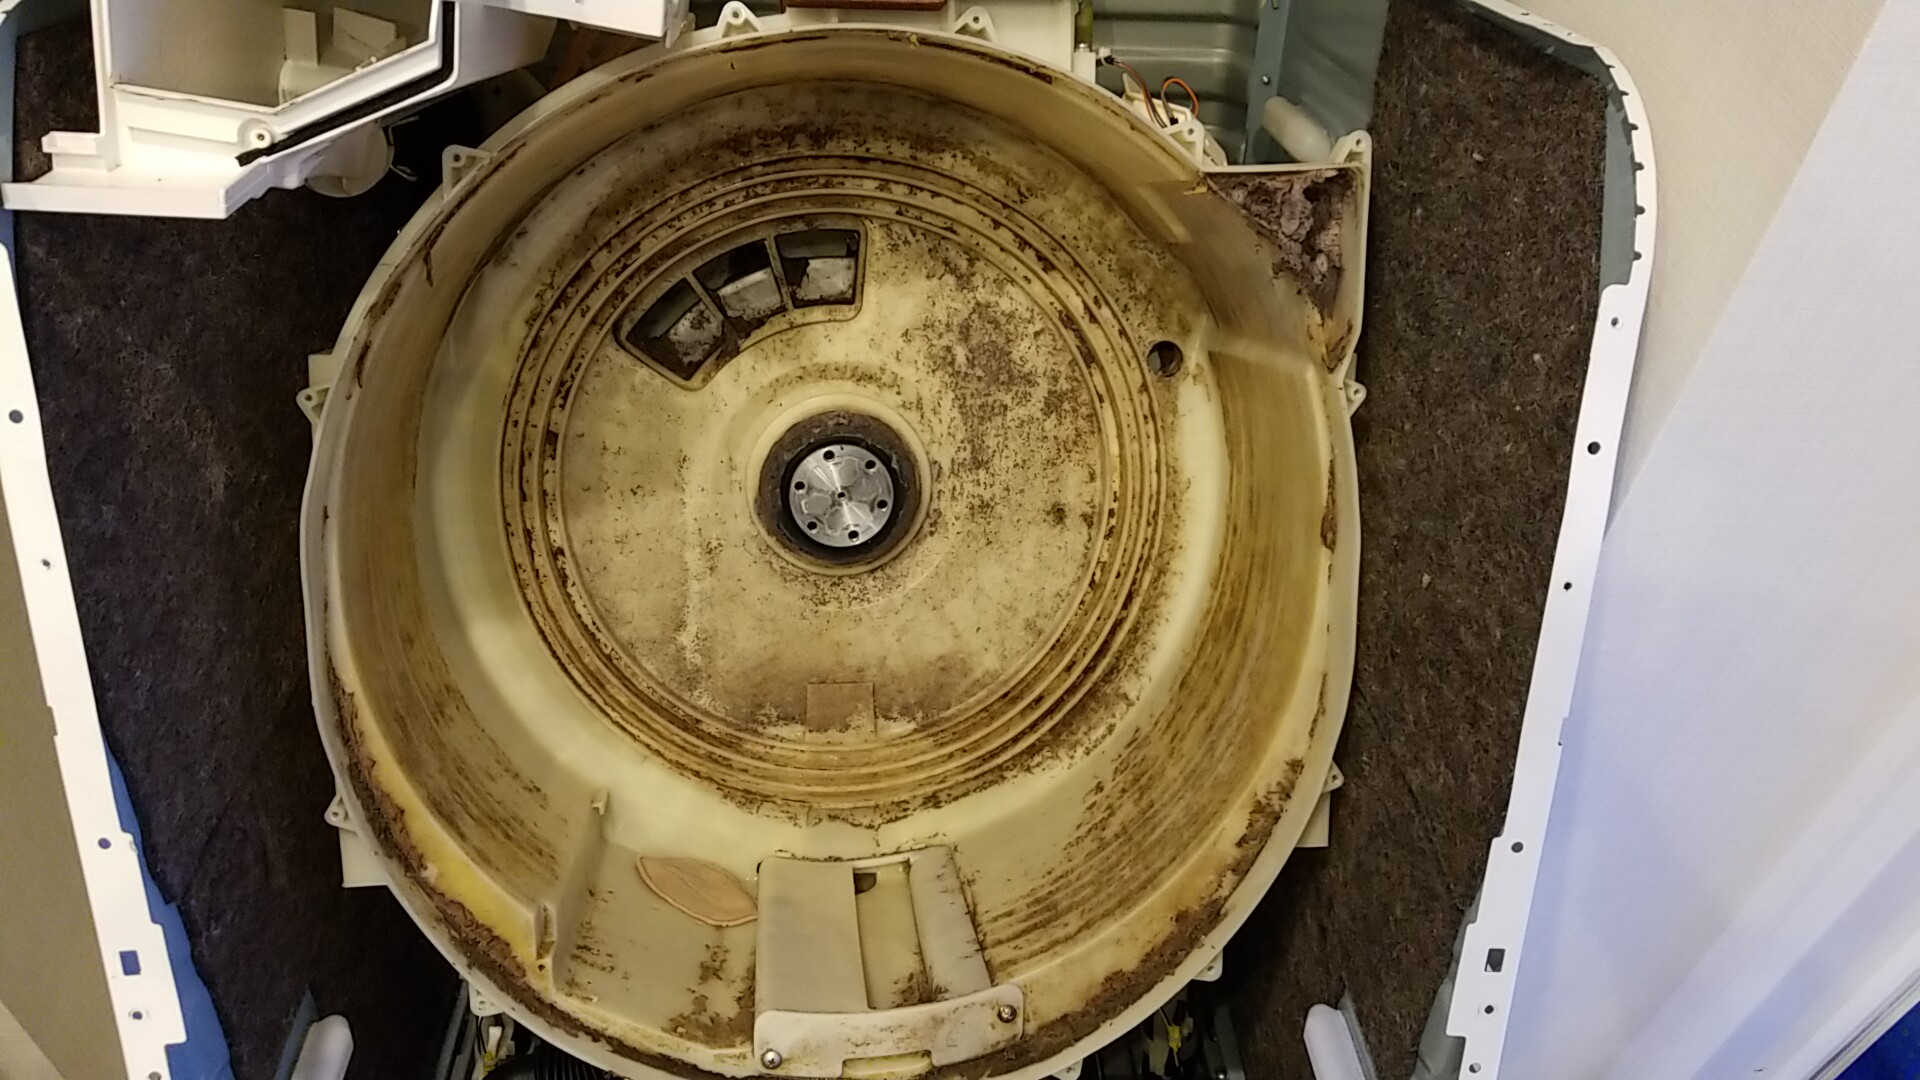 名古屋市港区いろは町  東芝製ドラム式洗濯機分解クリーニング同時乾燥系統清掃